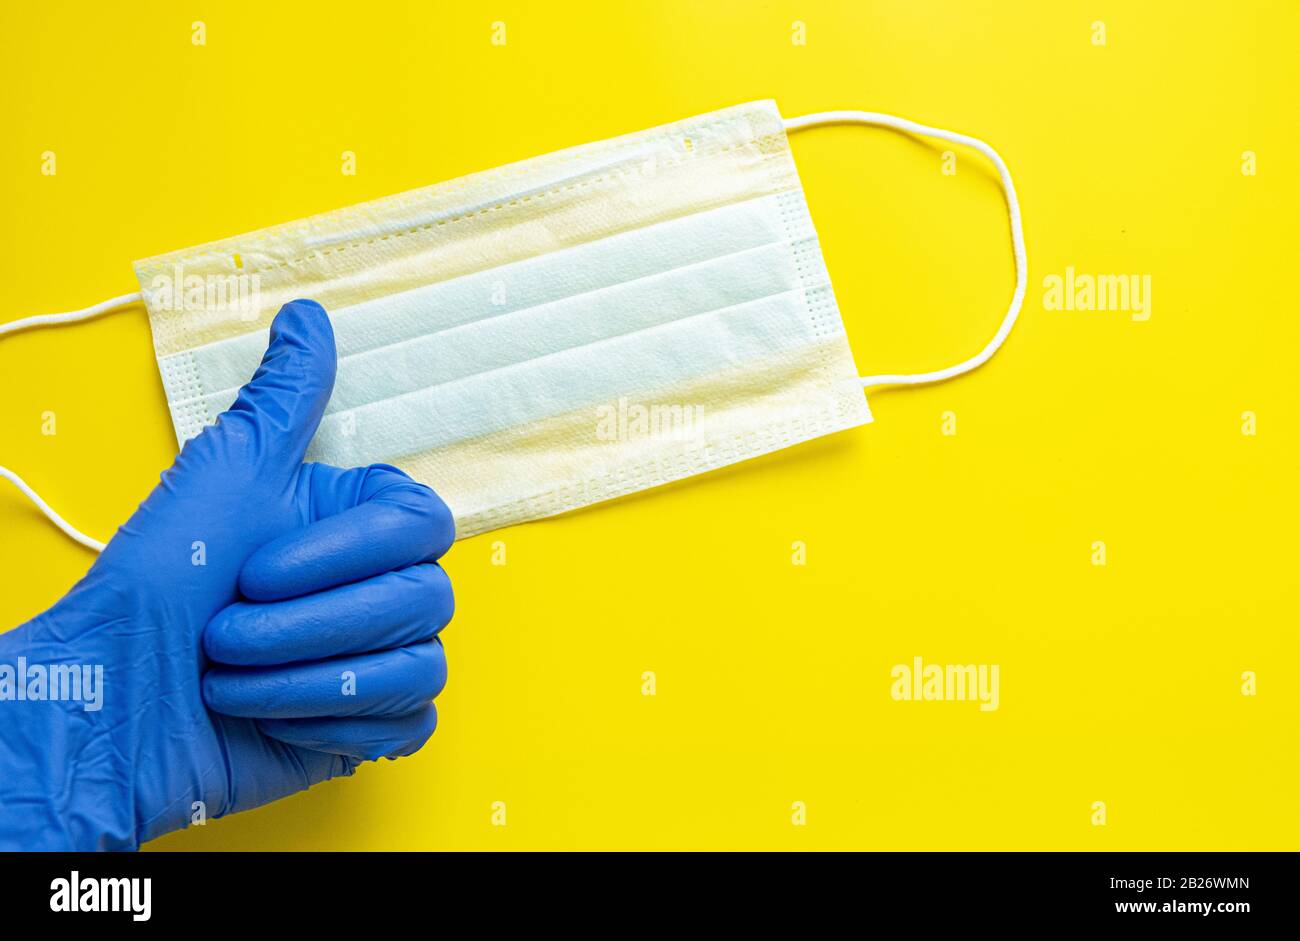 Indossate un guanto per uso medico su uno sfondo giallo con una maschera protettiva per uso medico. Concetto di protezione contro il coronavirus Foto Stock